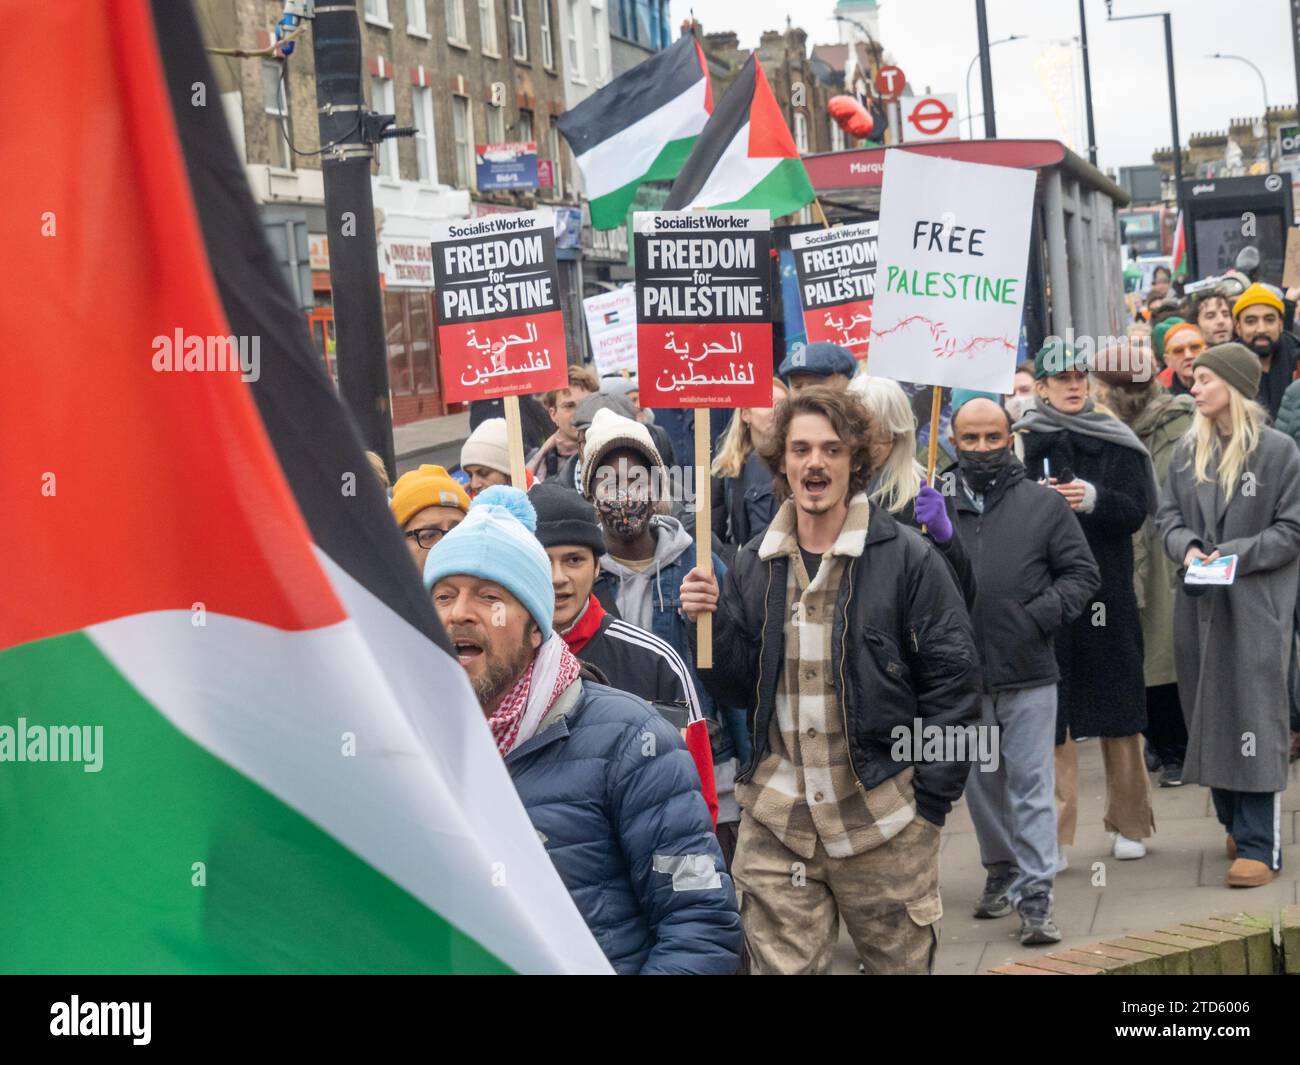 London, Großbritannien. Dezember 2023. Der Waffenstillstand In Gaza Jetzt! der marsch in Lewisham war eines von vielen Ereignissen im ganzen Land an einem Aktionstag für Palästina, da die Wut über die steigende Zahl der Todesopfer zunimmt, wobei über 600 Menschen, hauptsächlich Frauen und Kinder, durch israelische Angriffe getötet wurden. Eine große Menschenmenge, möglicherweise etwa tausend, traf sich am Neuen Kreuz, um zu marschieren, um einen dauerhaften Waffenstillstand zu fordern und ein Ende der britischen Komplizenschaft in der israelischen Apartheid zu fordern. Peter Marshall/Alamy Live News Stockfoto